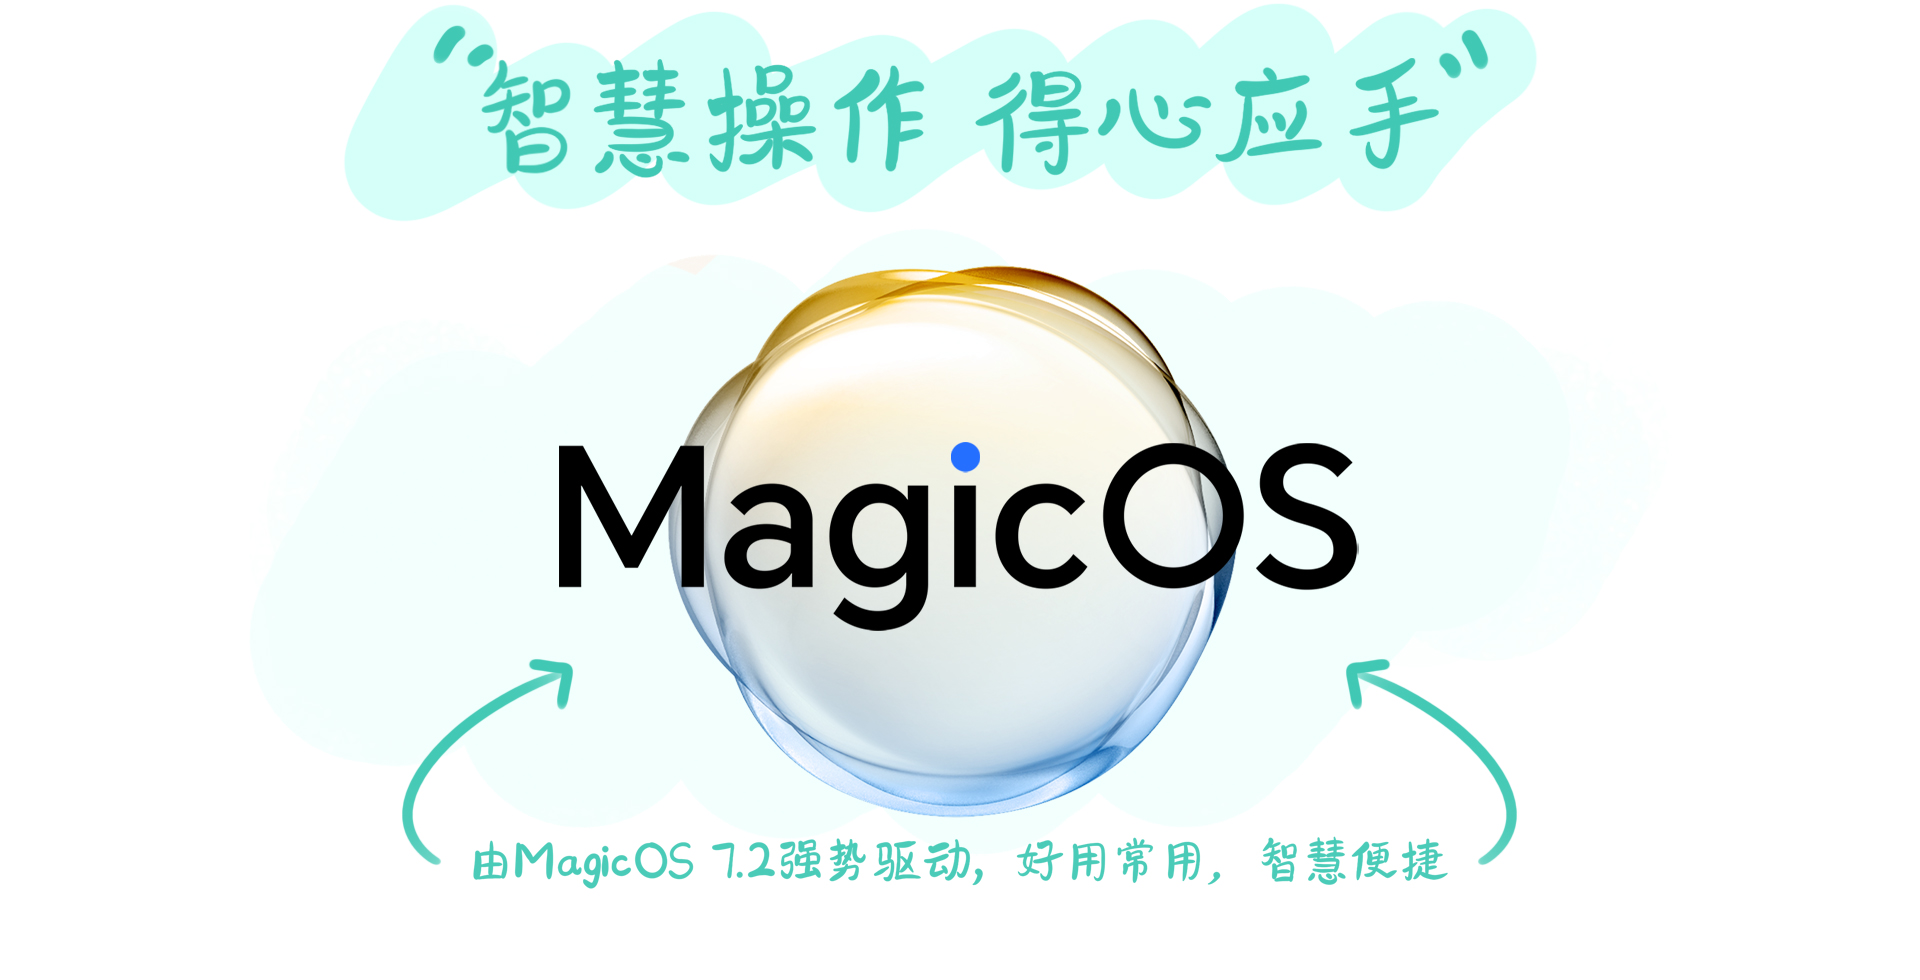 MagicOS 7.2 